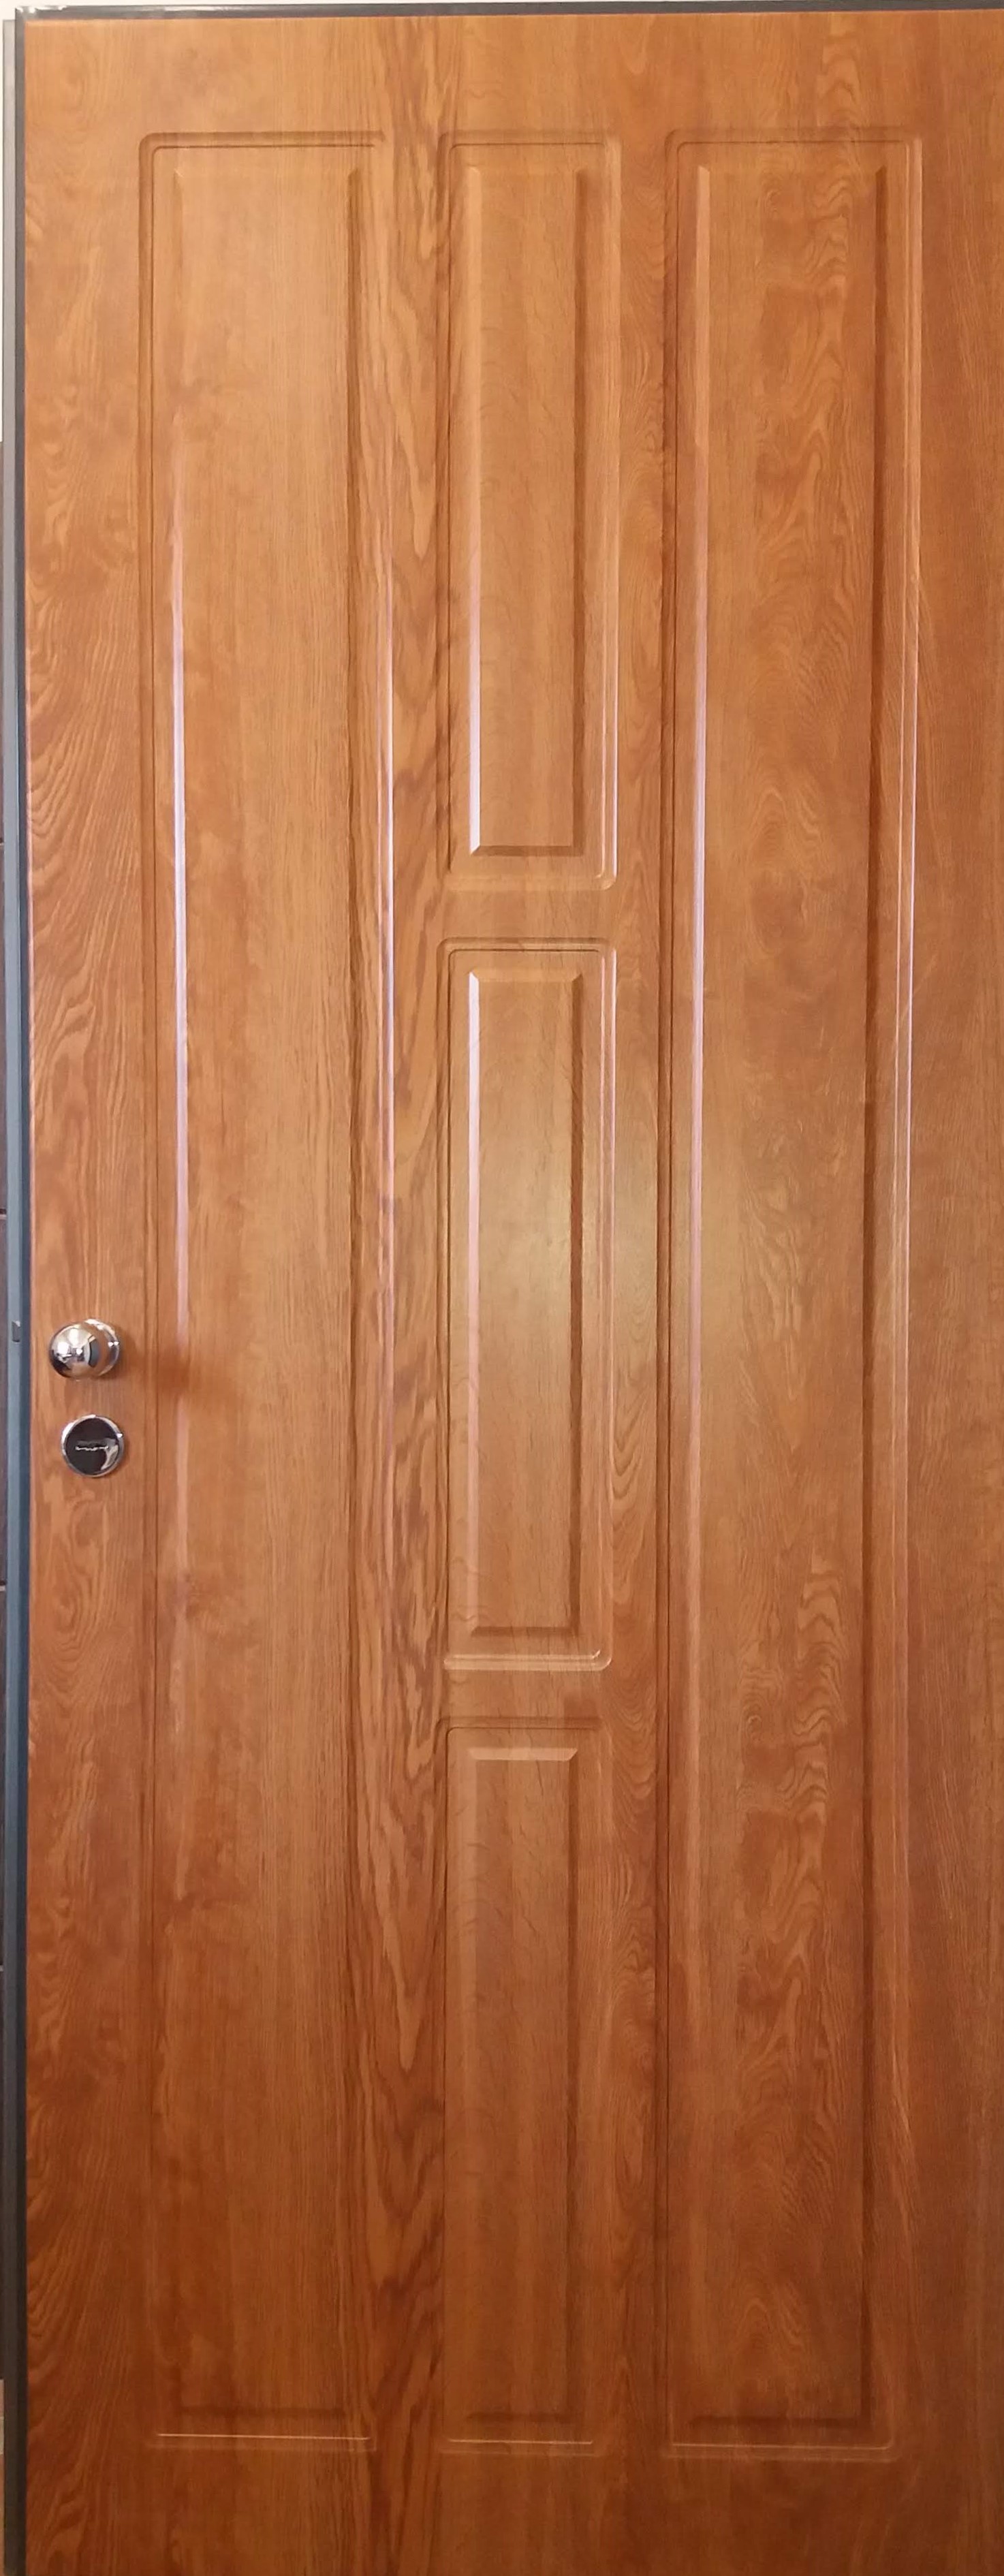 fóliázott bejárati ajtók